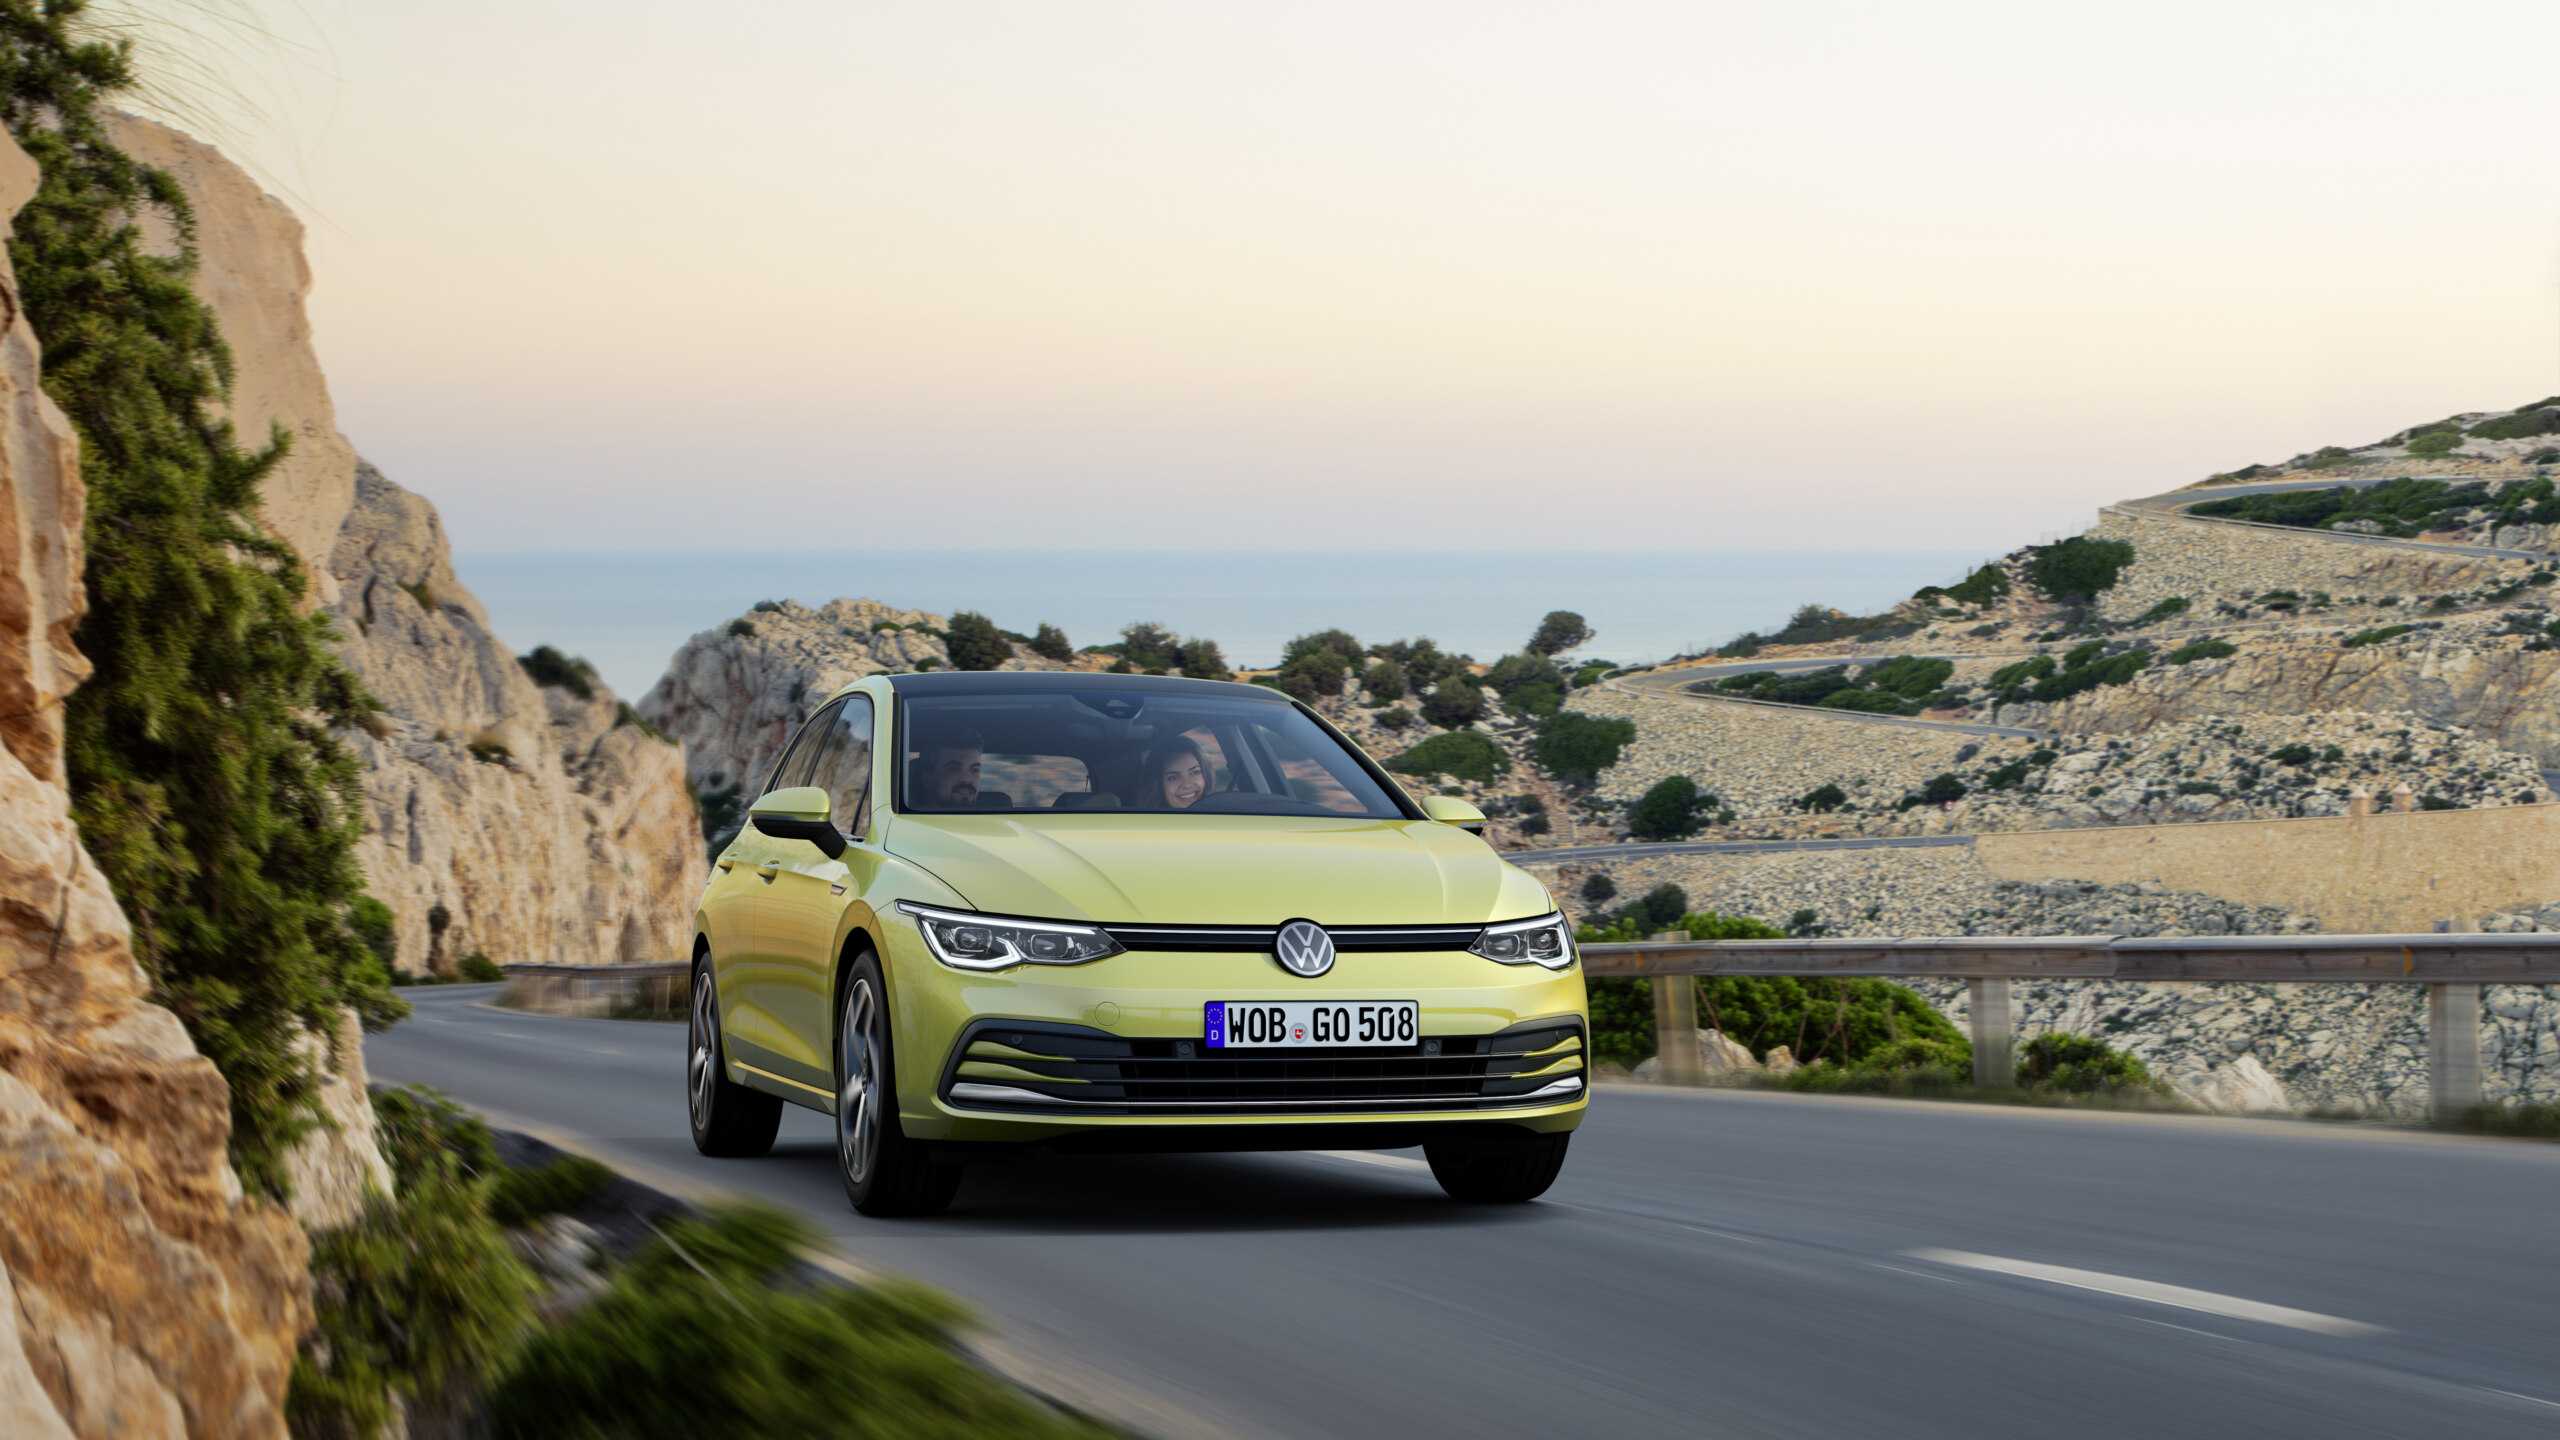 Volkswagen golf sportsvan (2014) › характеристики, описание, видео и фото фольксваген гольф спортван › autozov.ru